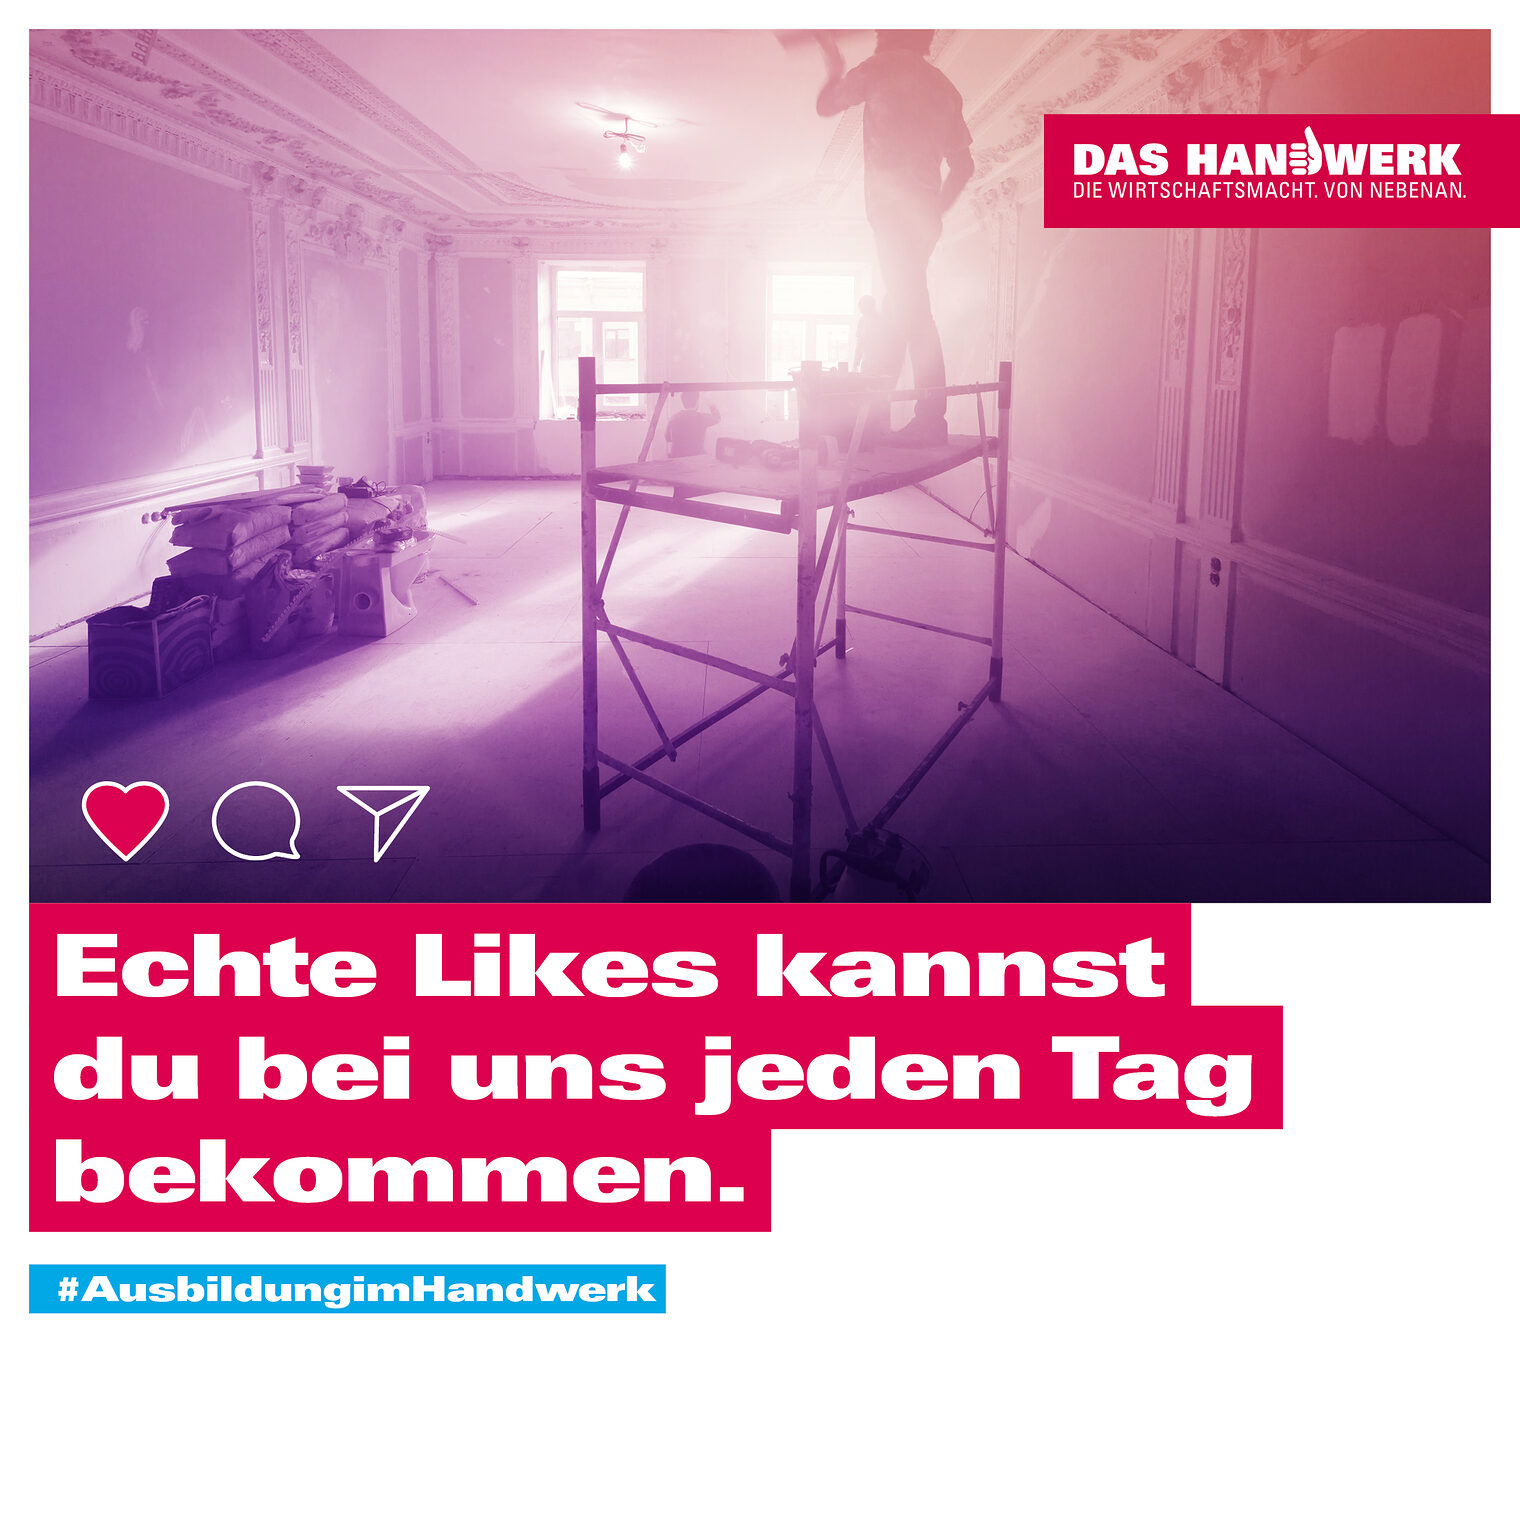 Imagekampagne Motiv mit Maler und Spruch "Echte Likes"